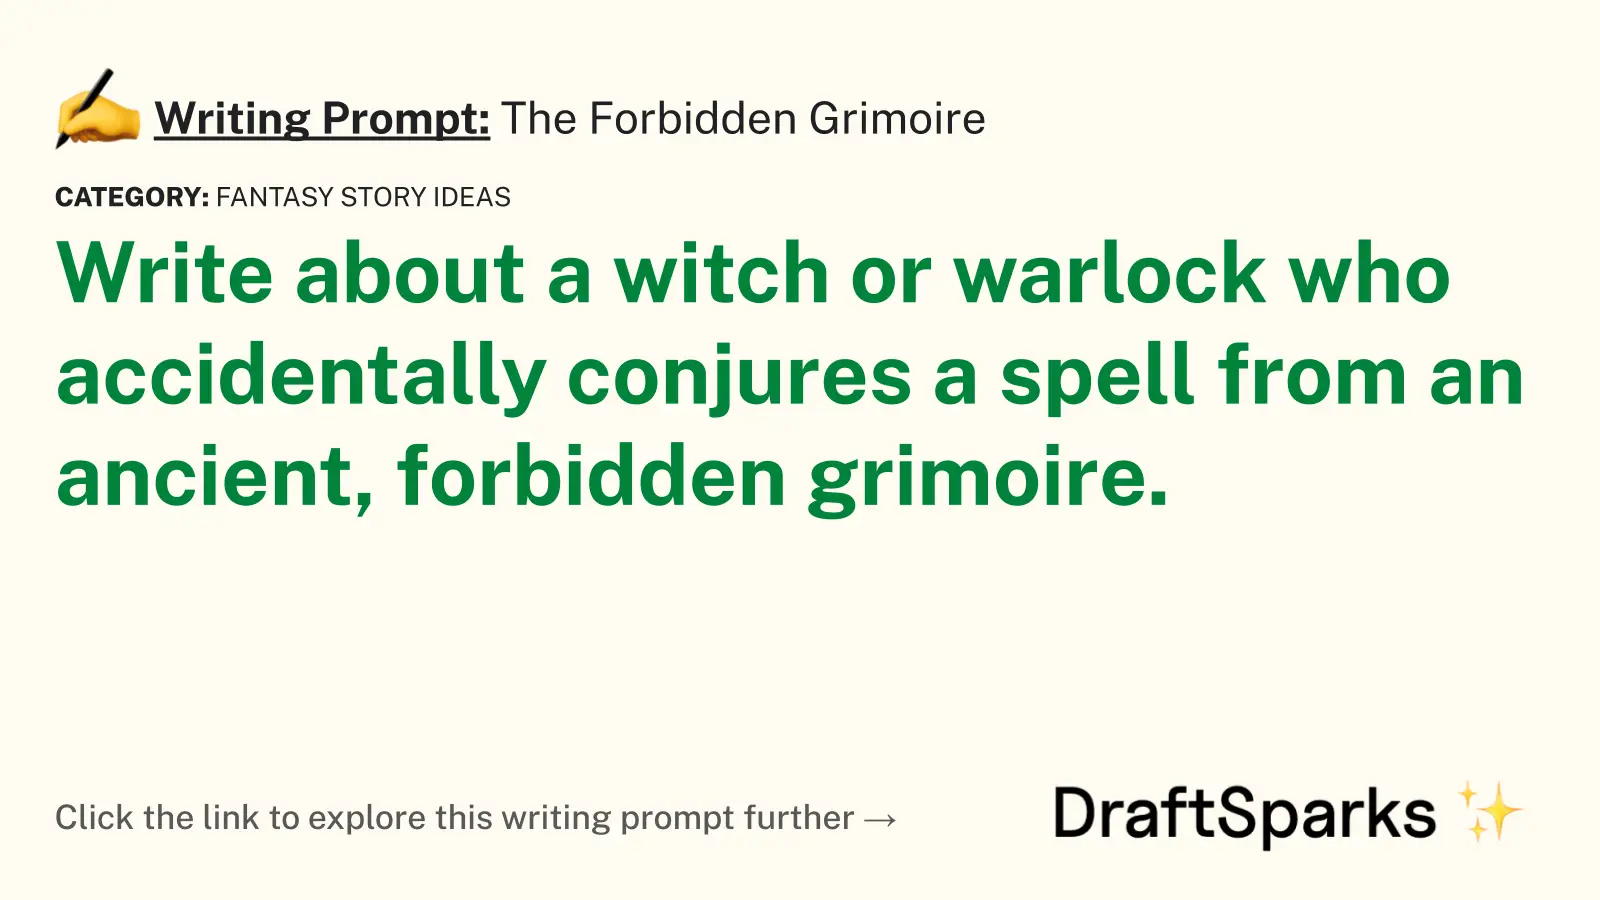 The Forbidden Grimoire